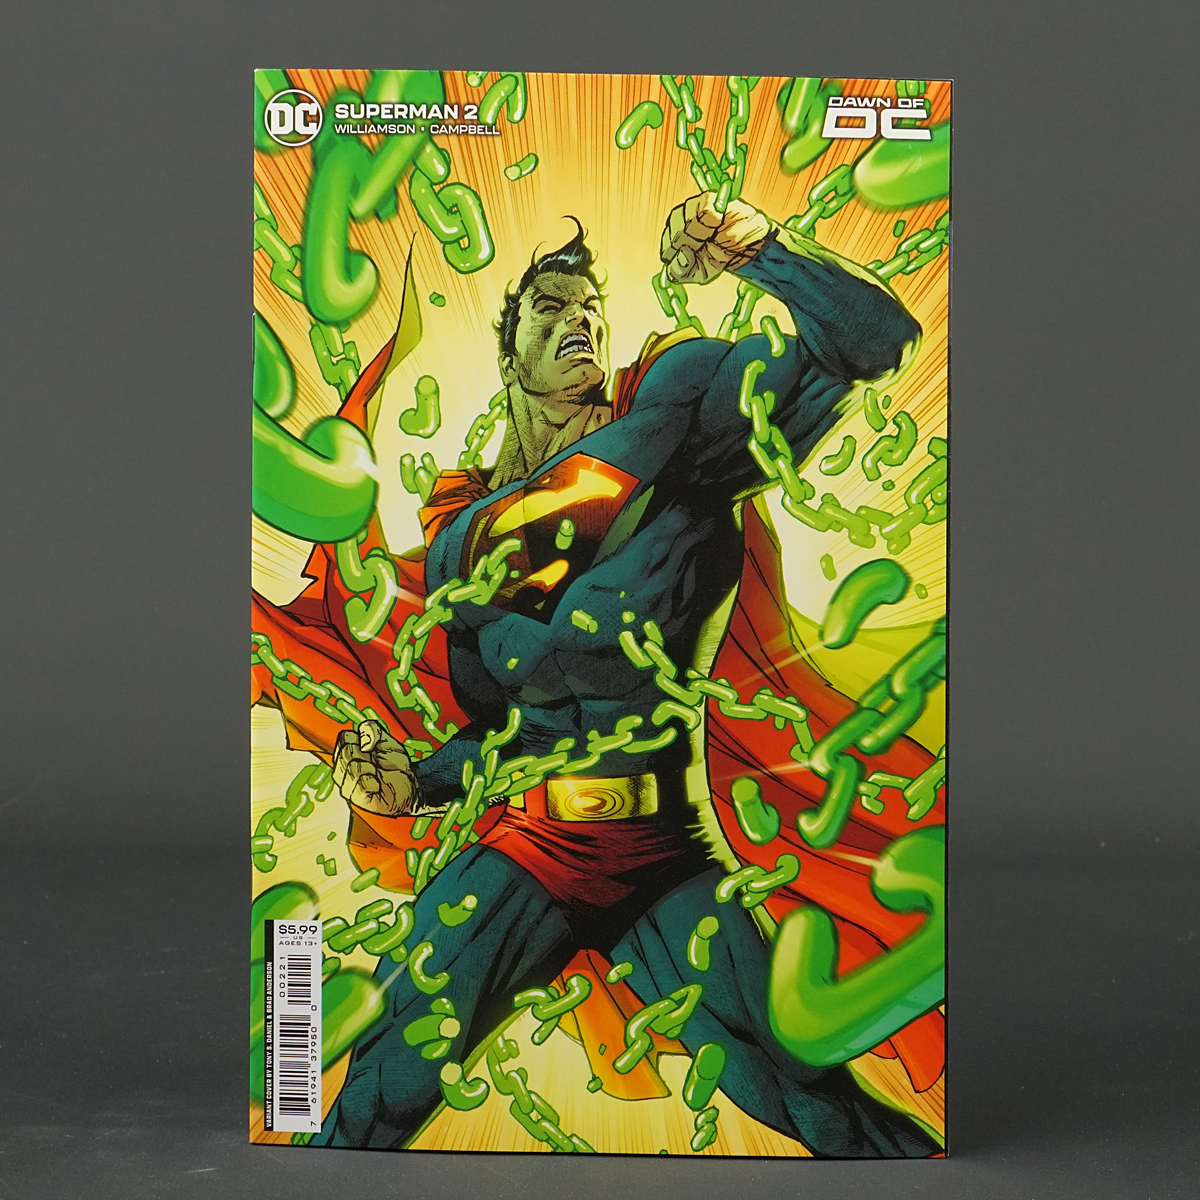 SUPERMAN #2 Cvr B DC Comics 2023 JAN233225 2B (W) Williamson (CA) Daniel